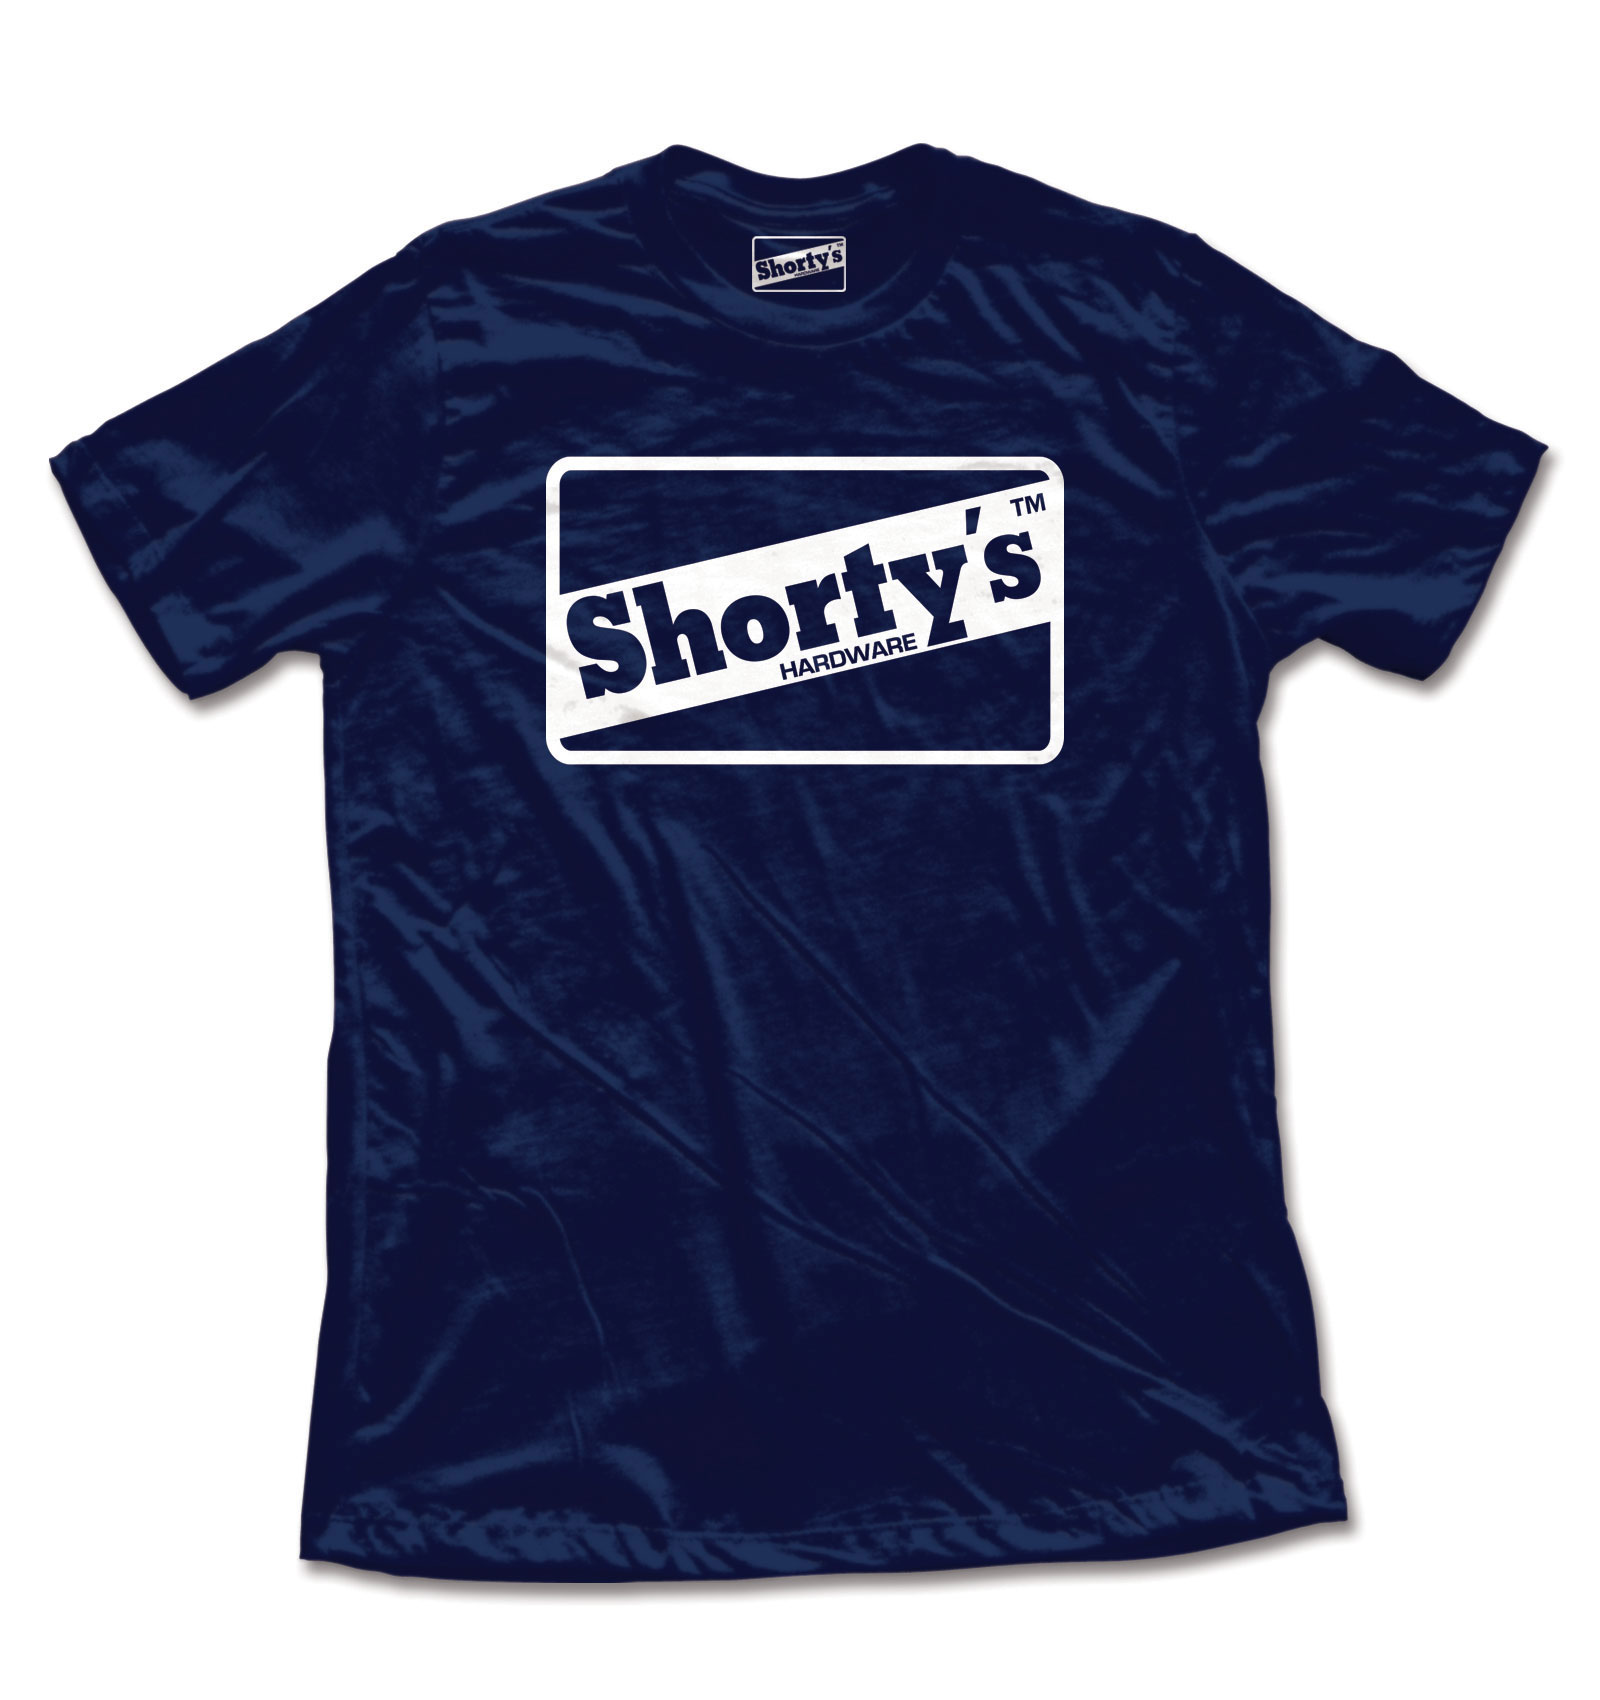 Shorty S Skateboard Shirt OG Logo Navy EBay